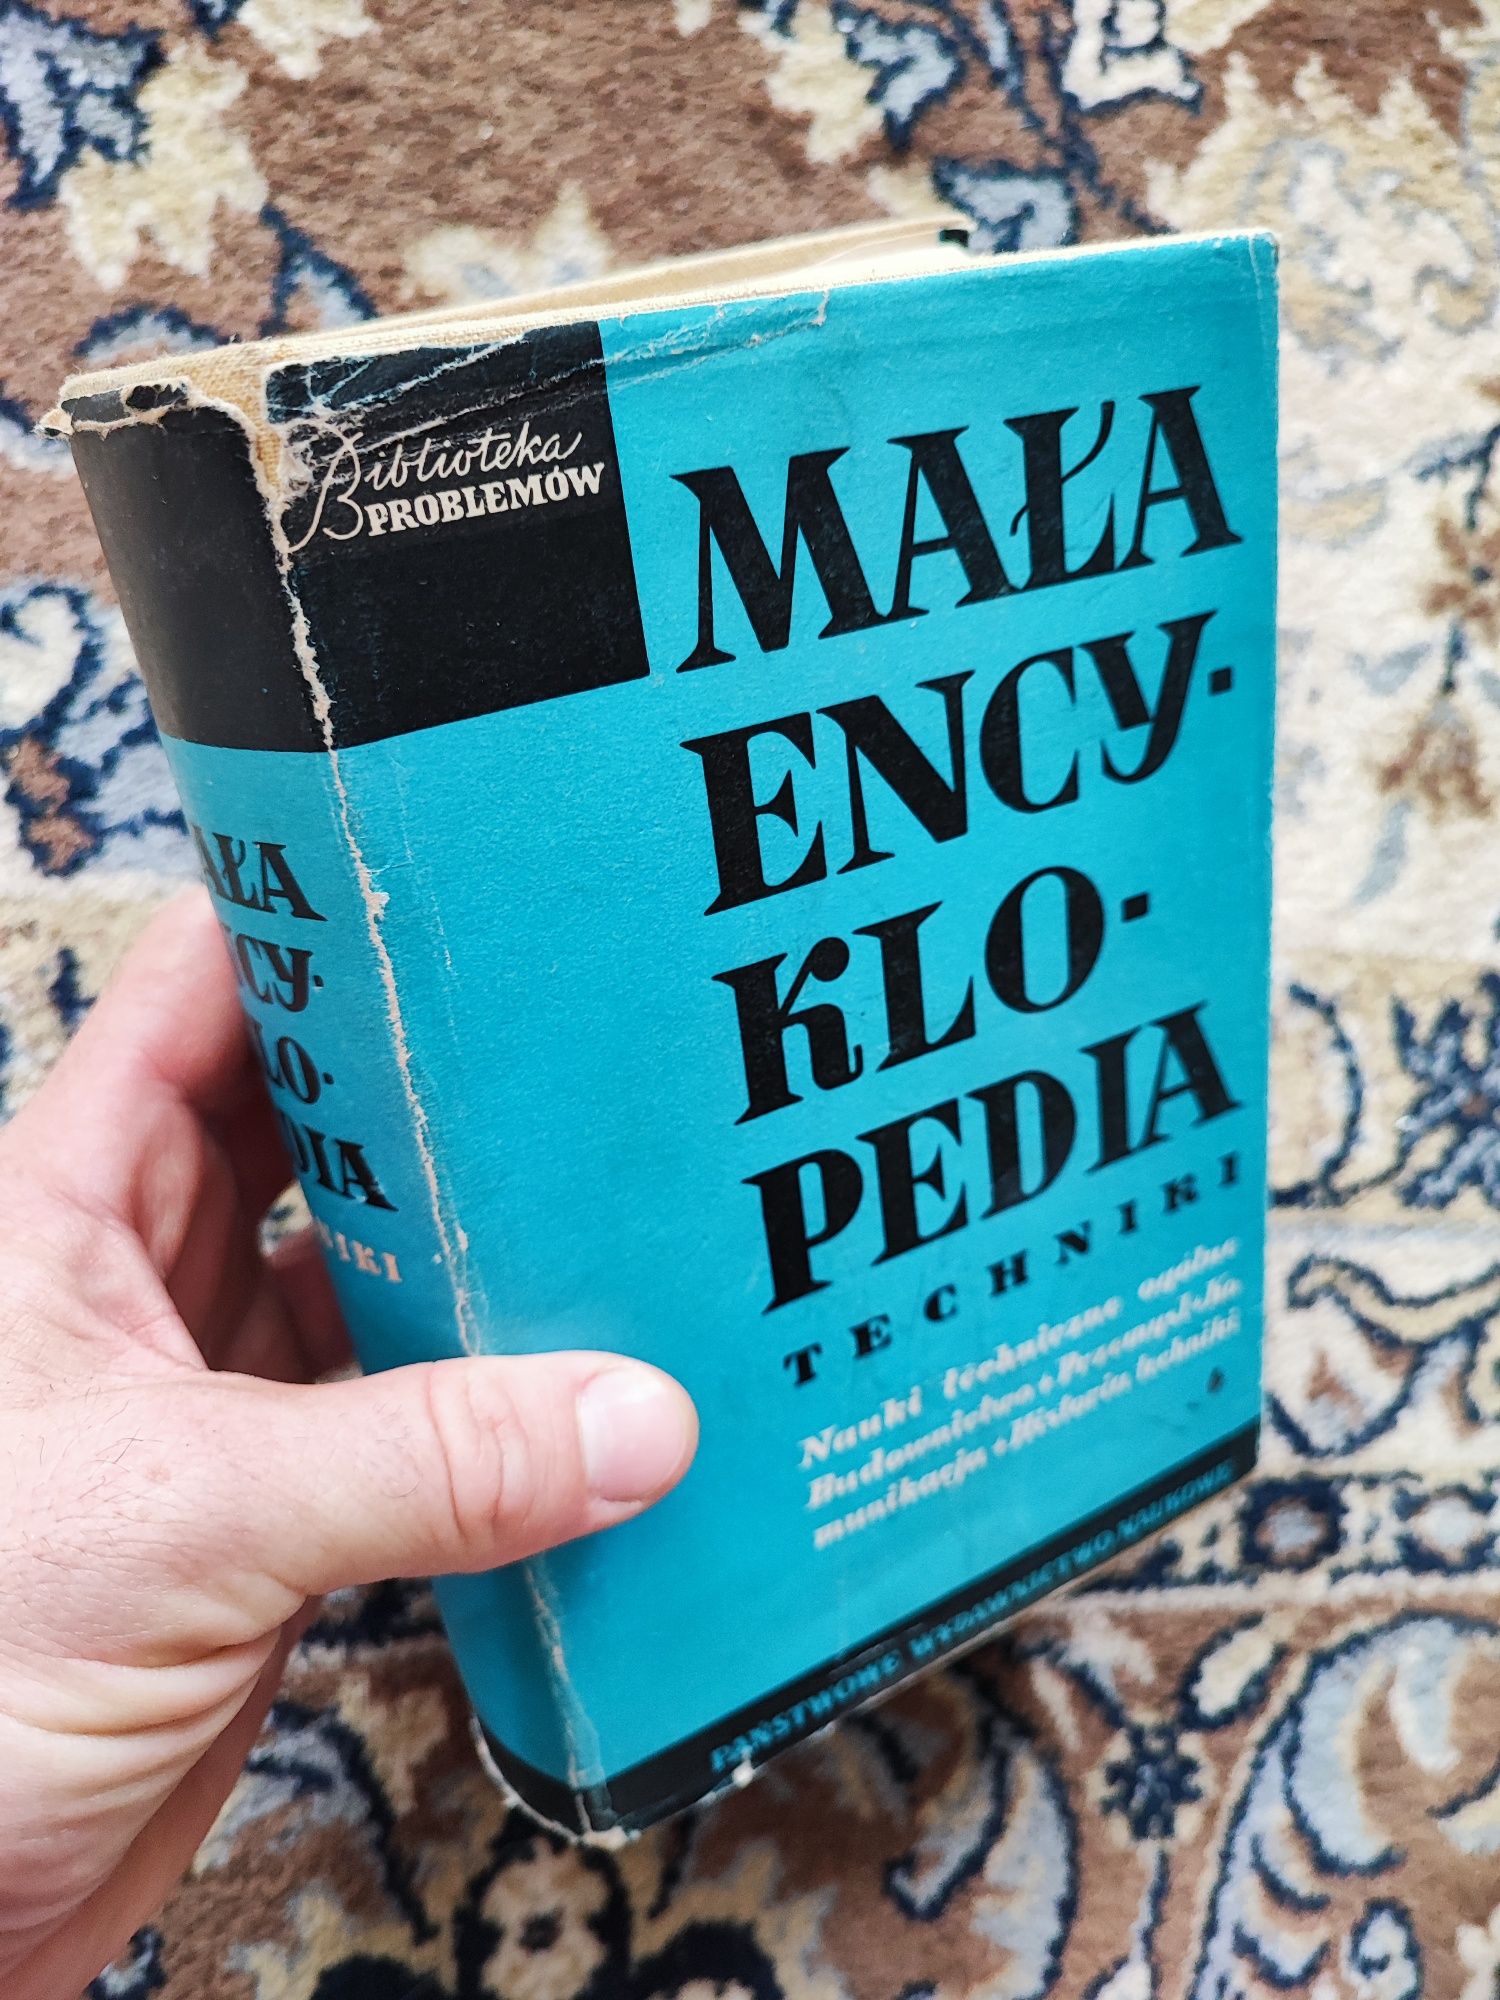 Mała encyklopedia techniki - Warszawa 1960